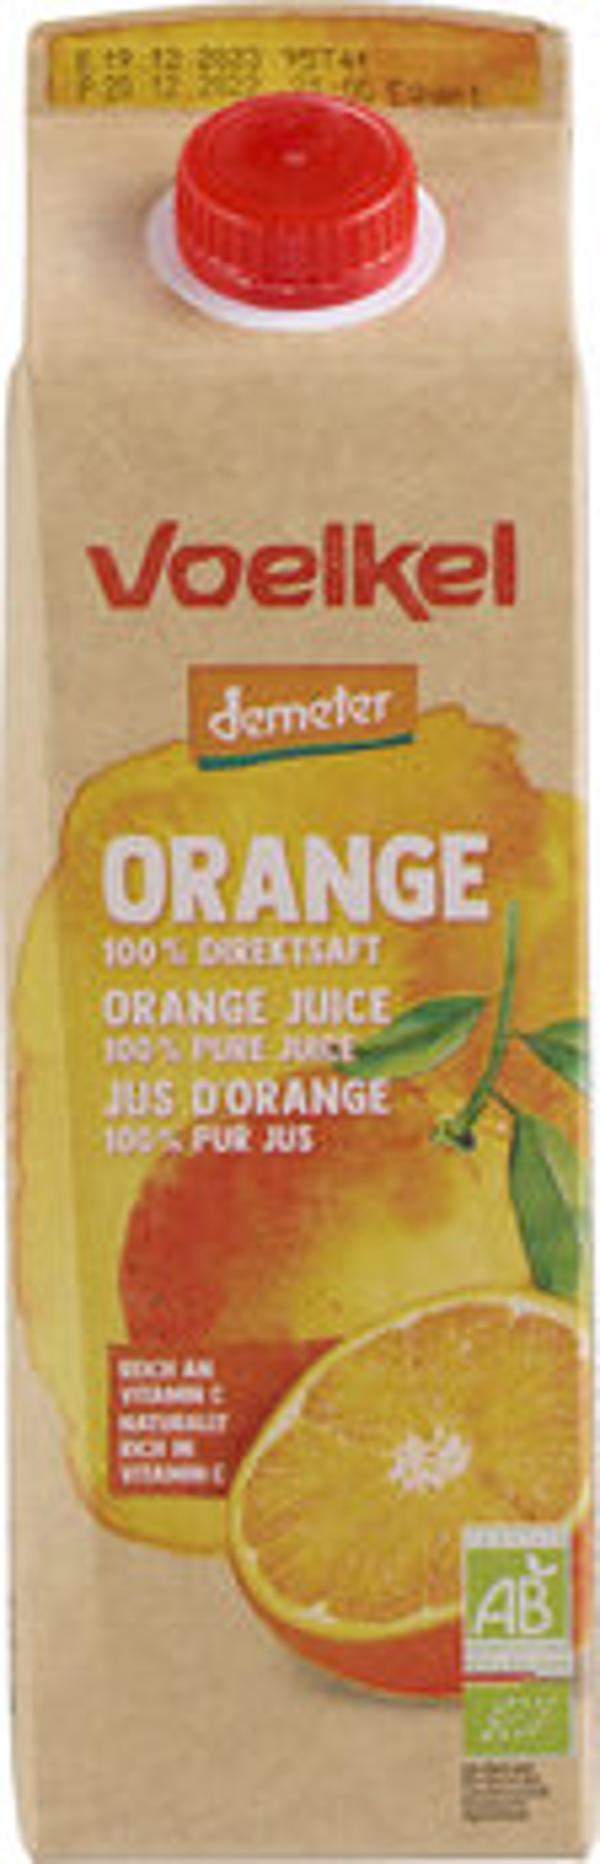 Produktfoto zu Feiner Orangensaft (6 x 1 Liter)